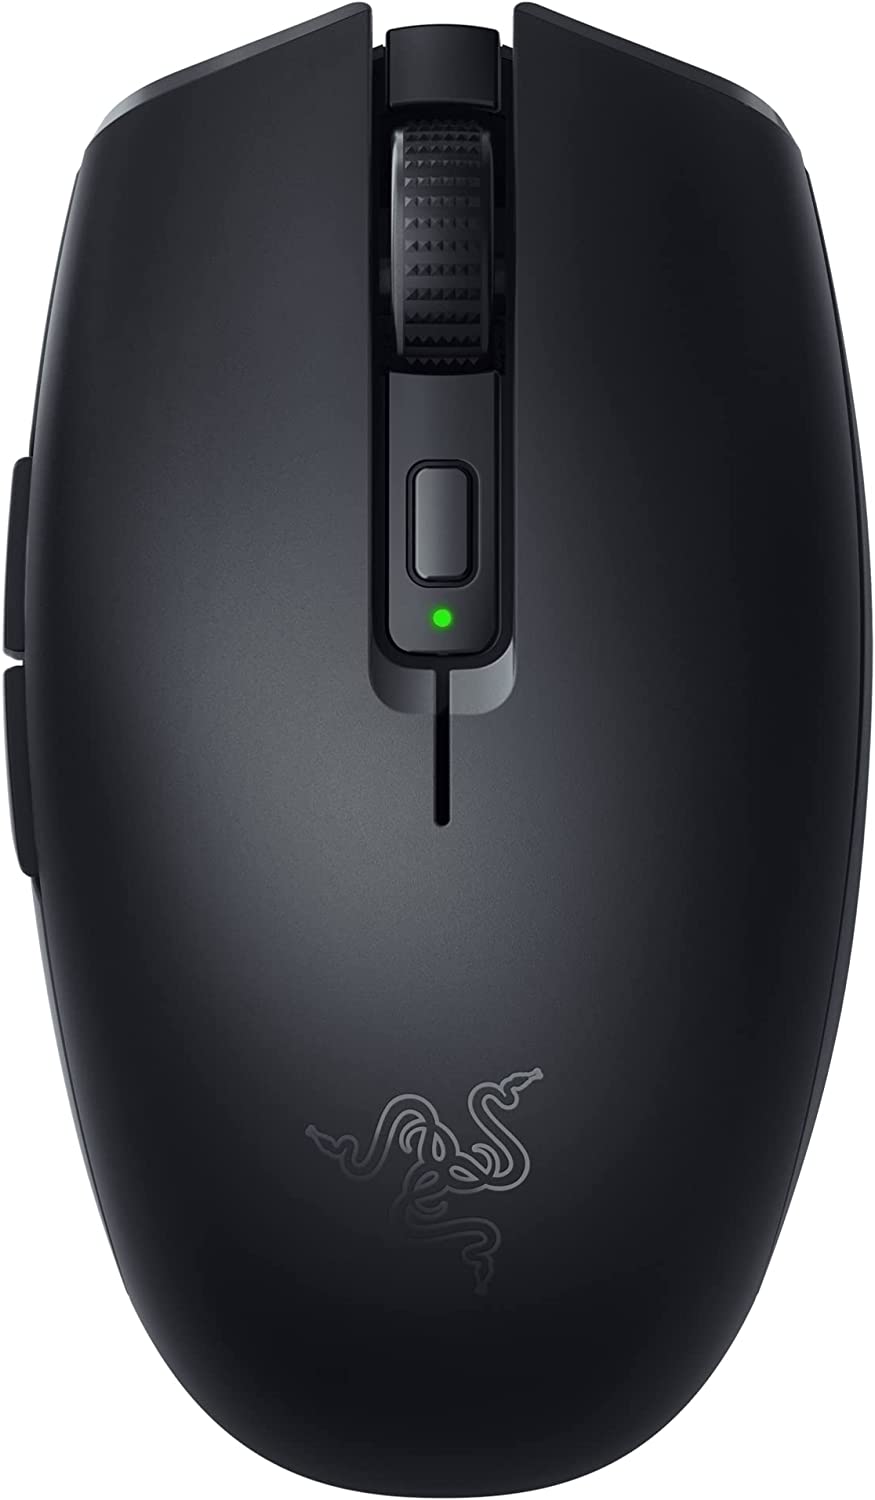 Razer Orochi Wireless Gaming Mouse V2